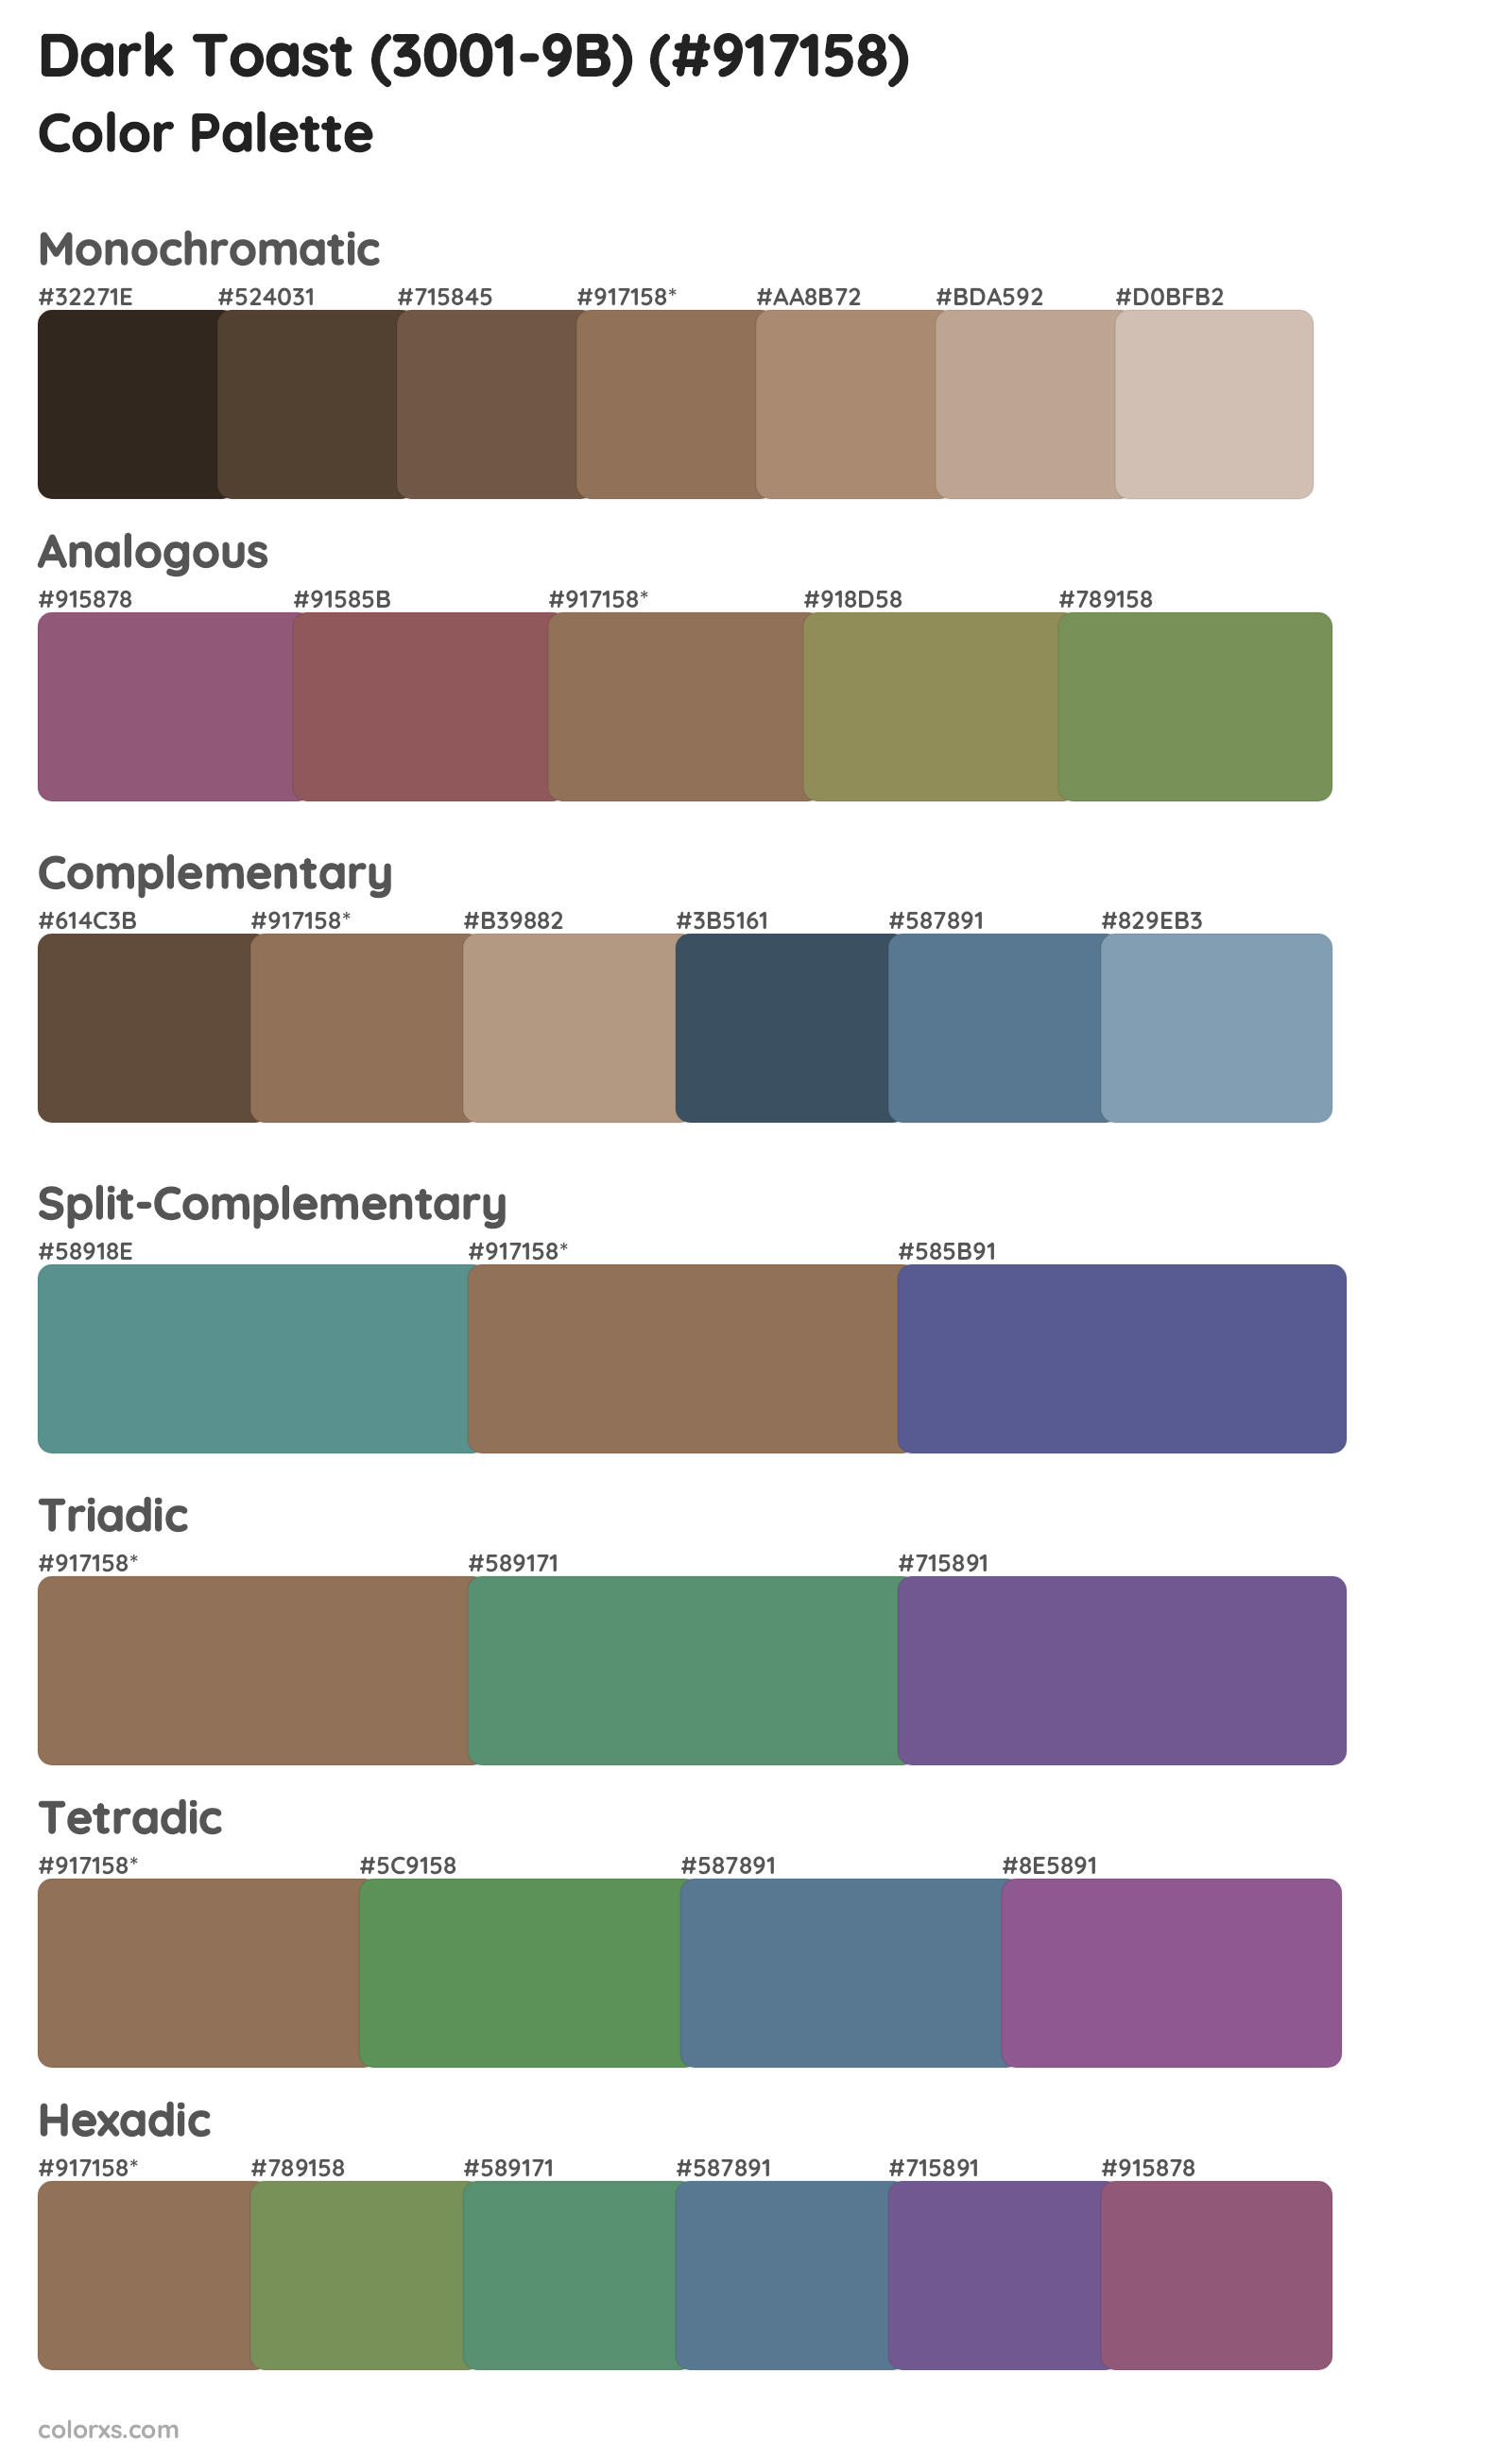 Dark Toast (3001-9B) Color Scheme Palettes